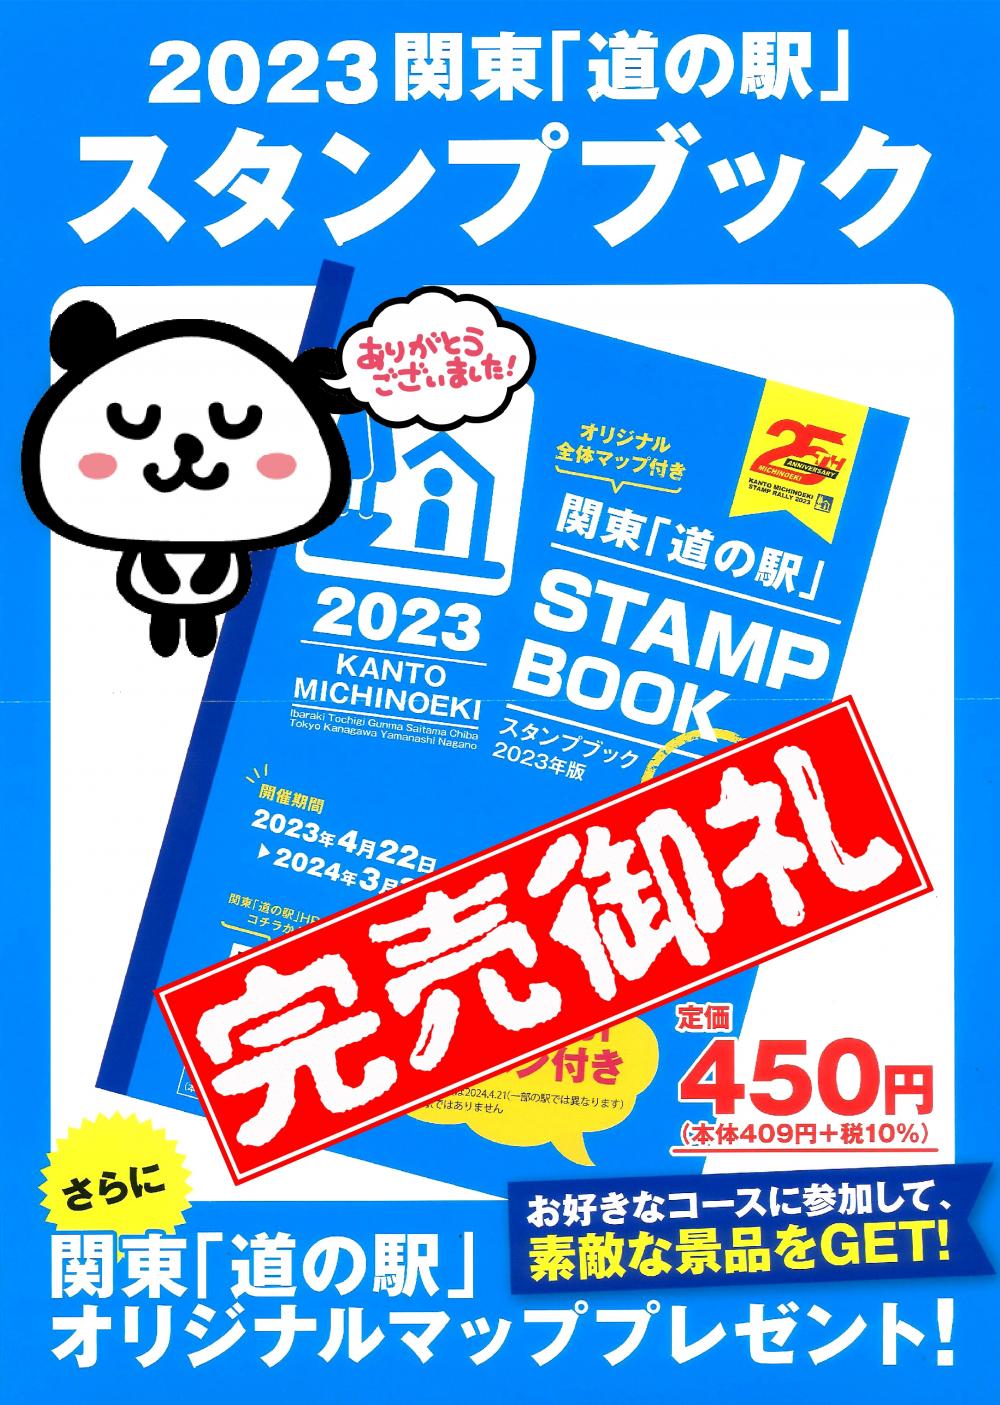 関東「道の駅」スタンプブック☆2023年度分完売しましたに関するページ